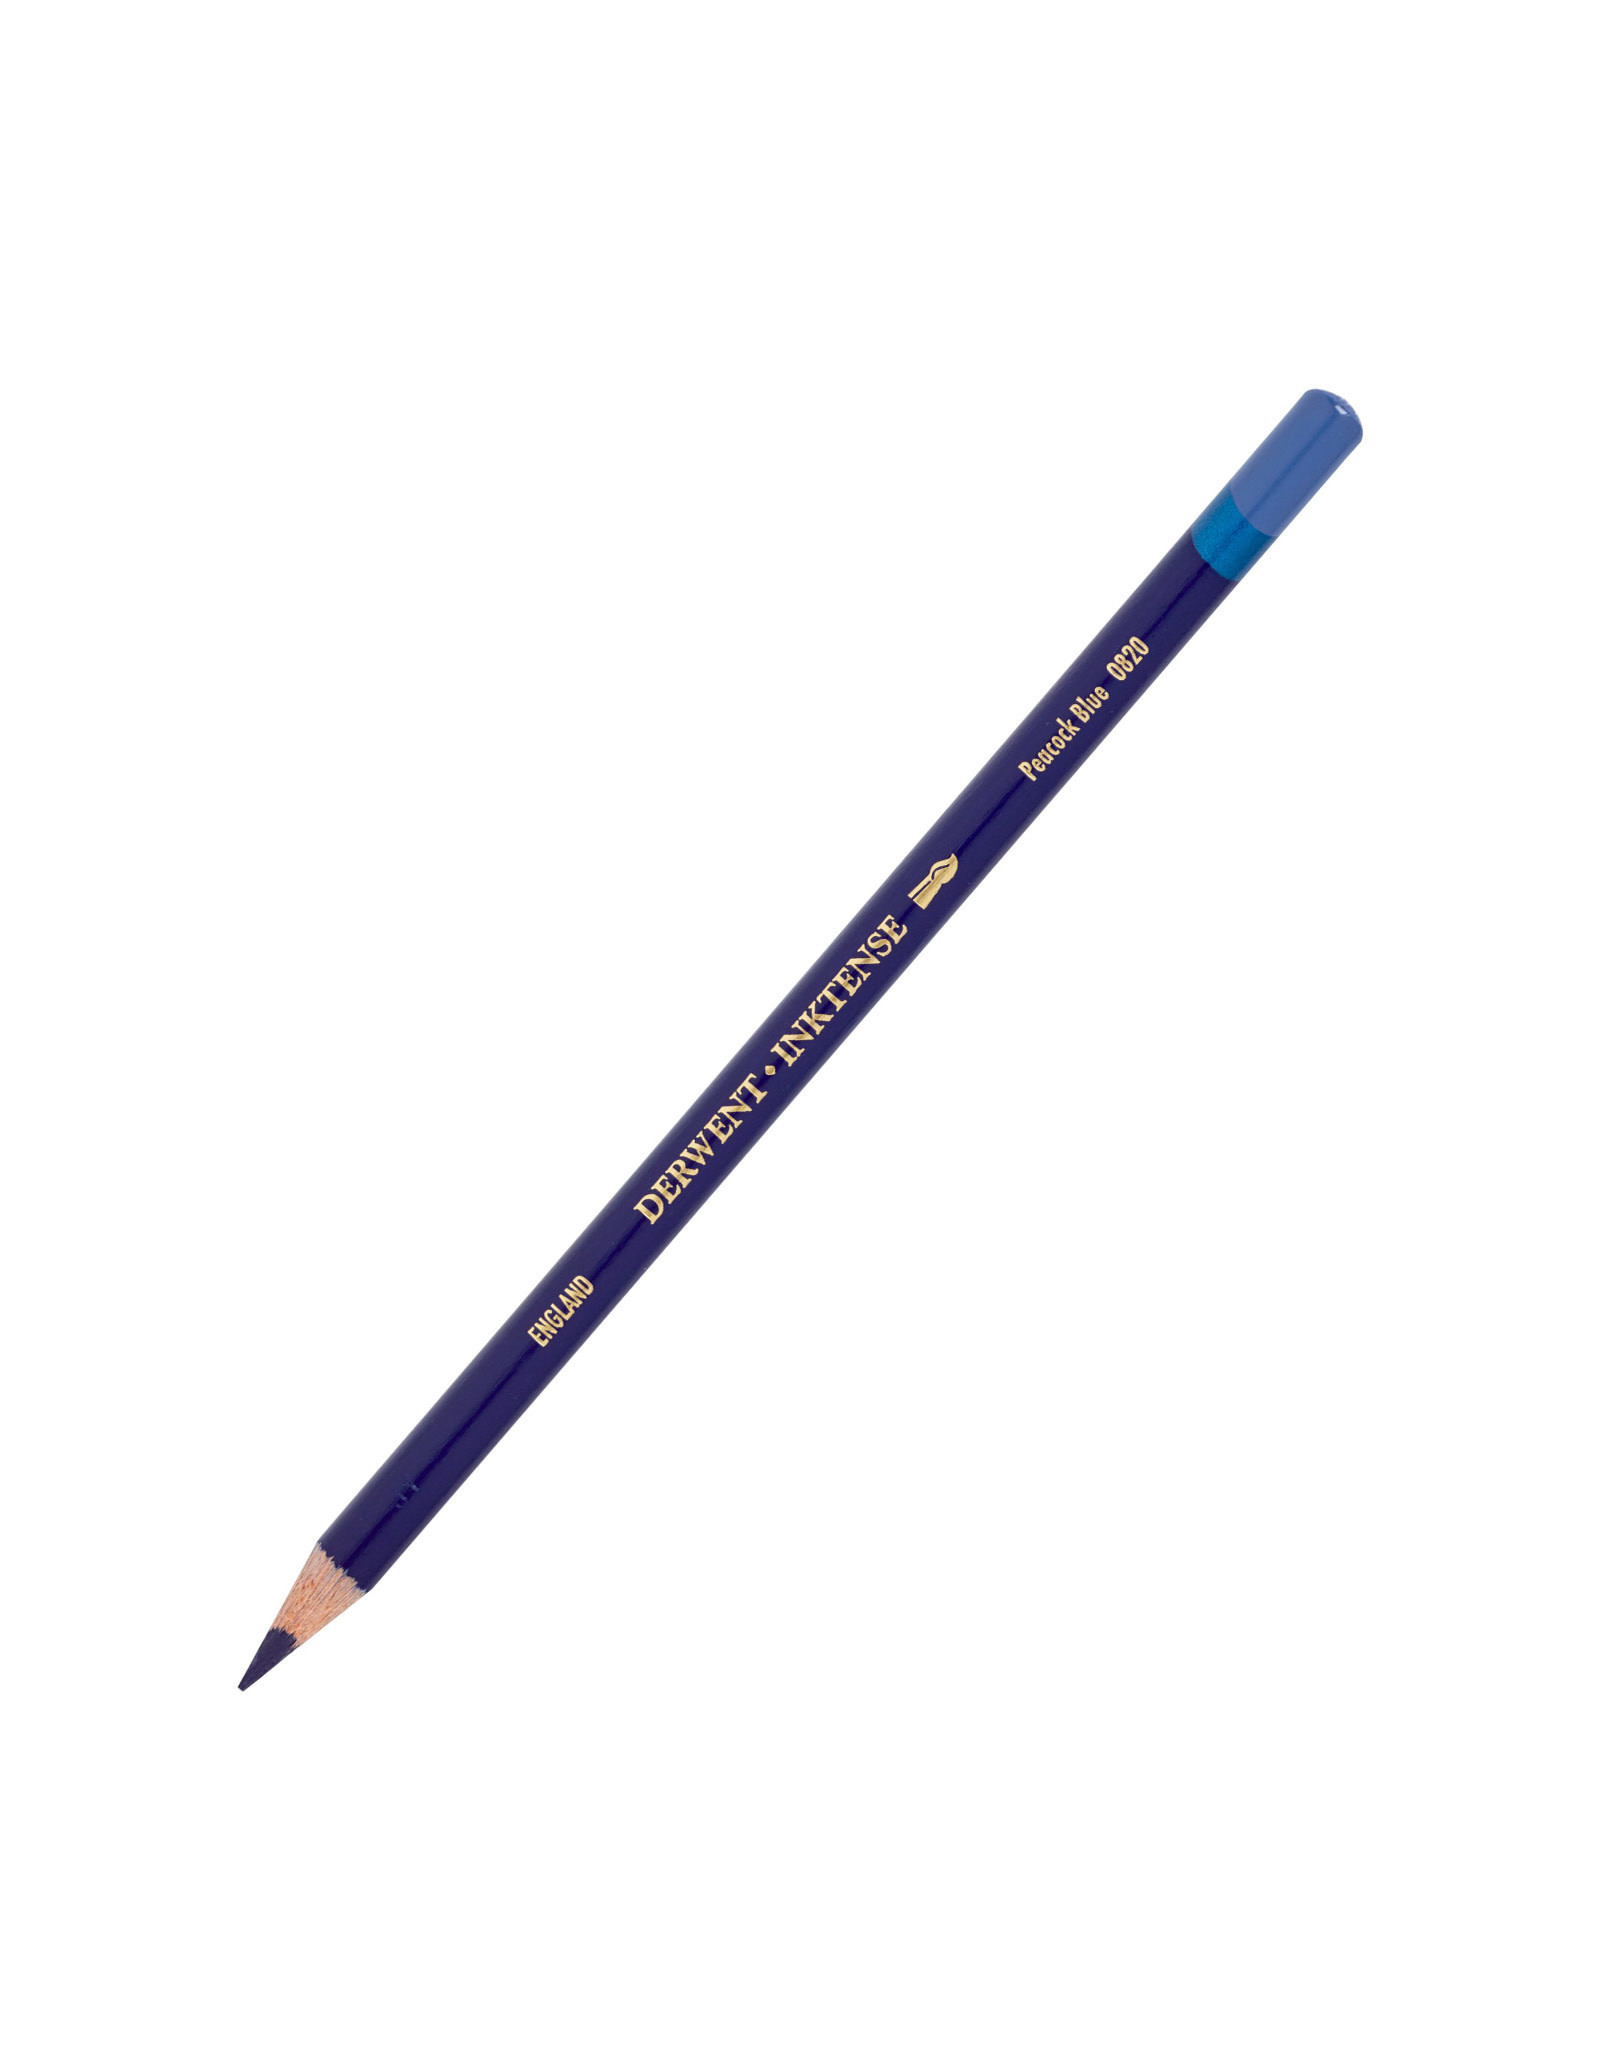 Derwent Derwent Inktense Pencil, Peacock Blue